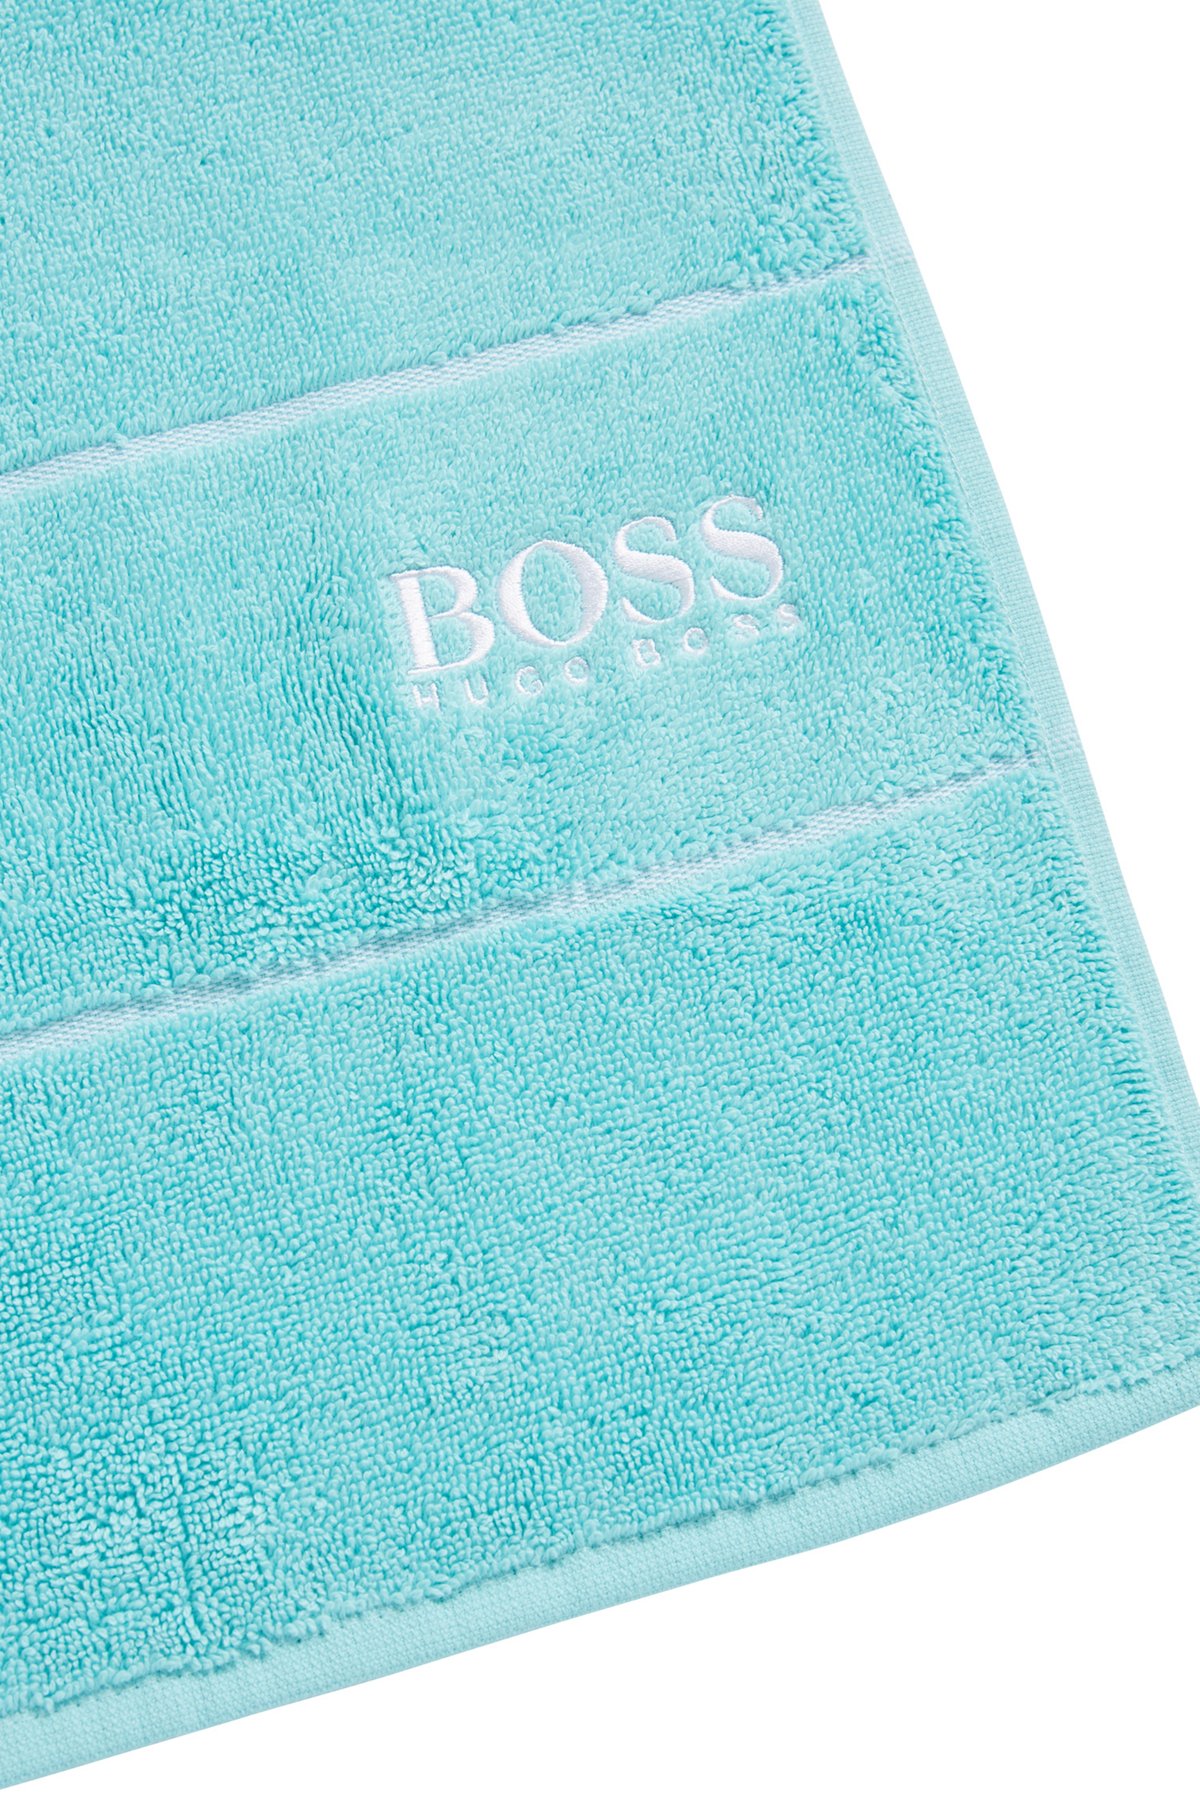 Drap de bain en coton avec logo brodé blanc, Turquoise